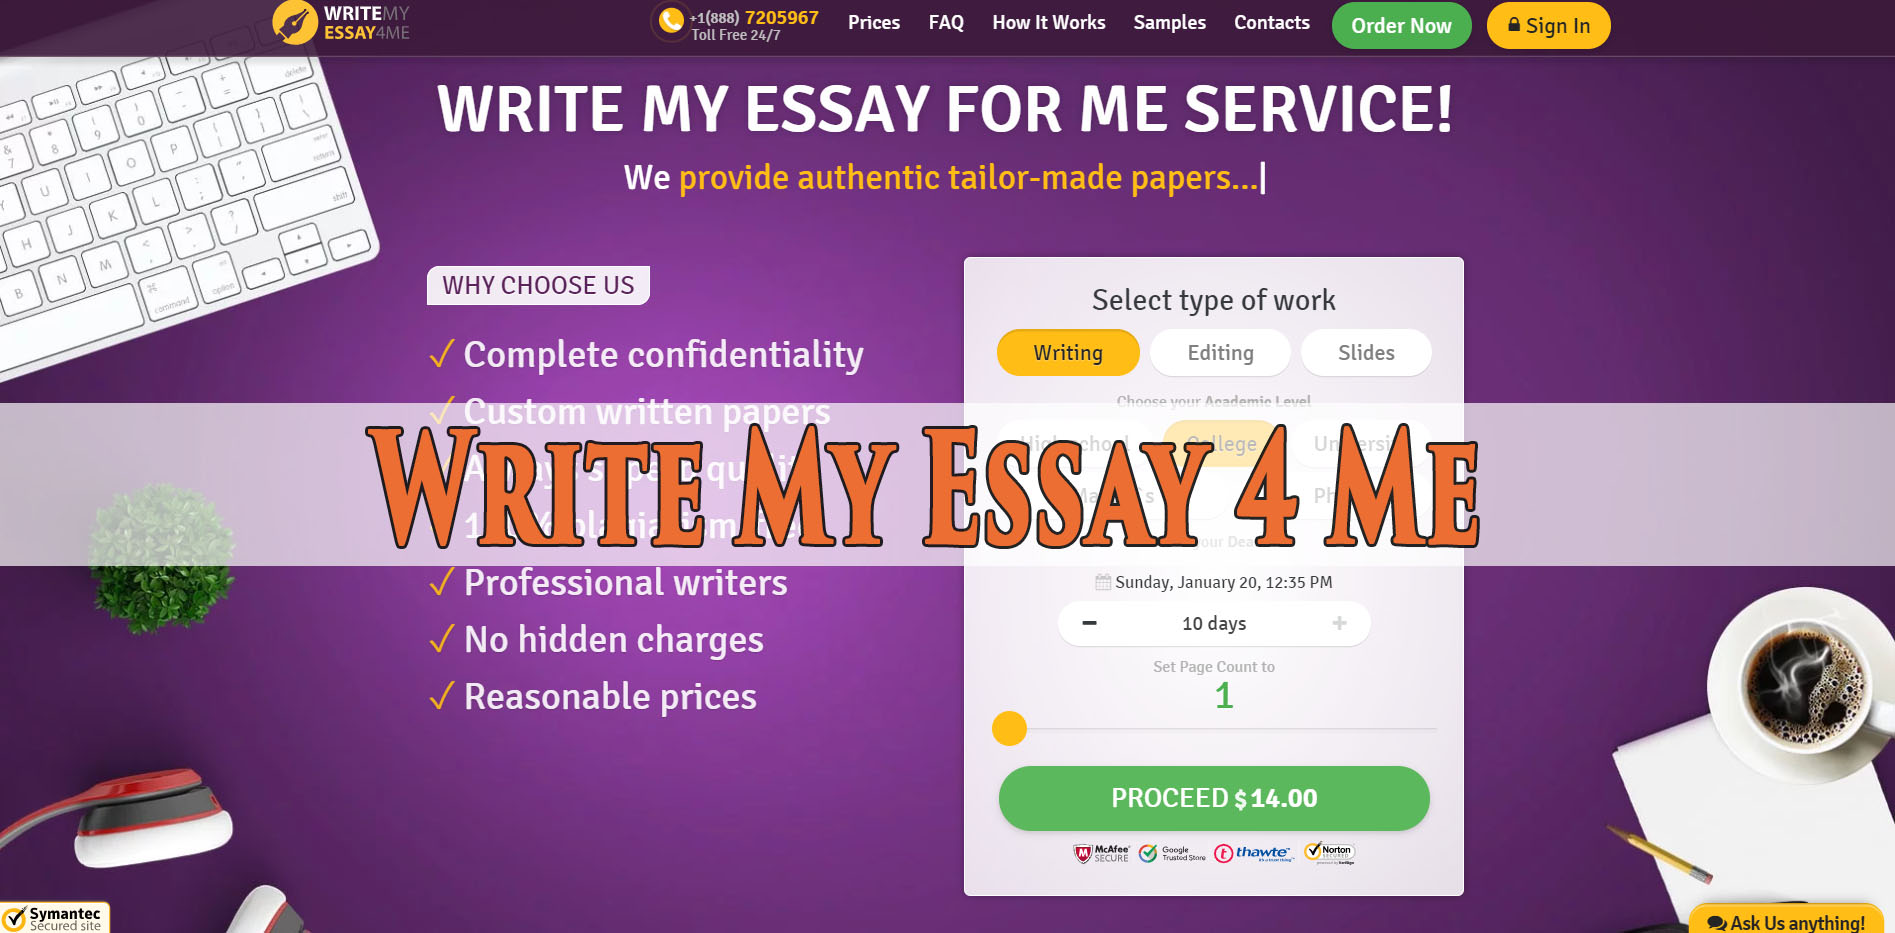 Write my essay 4 me reviews